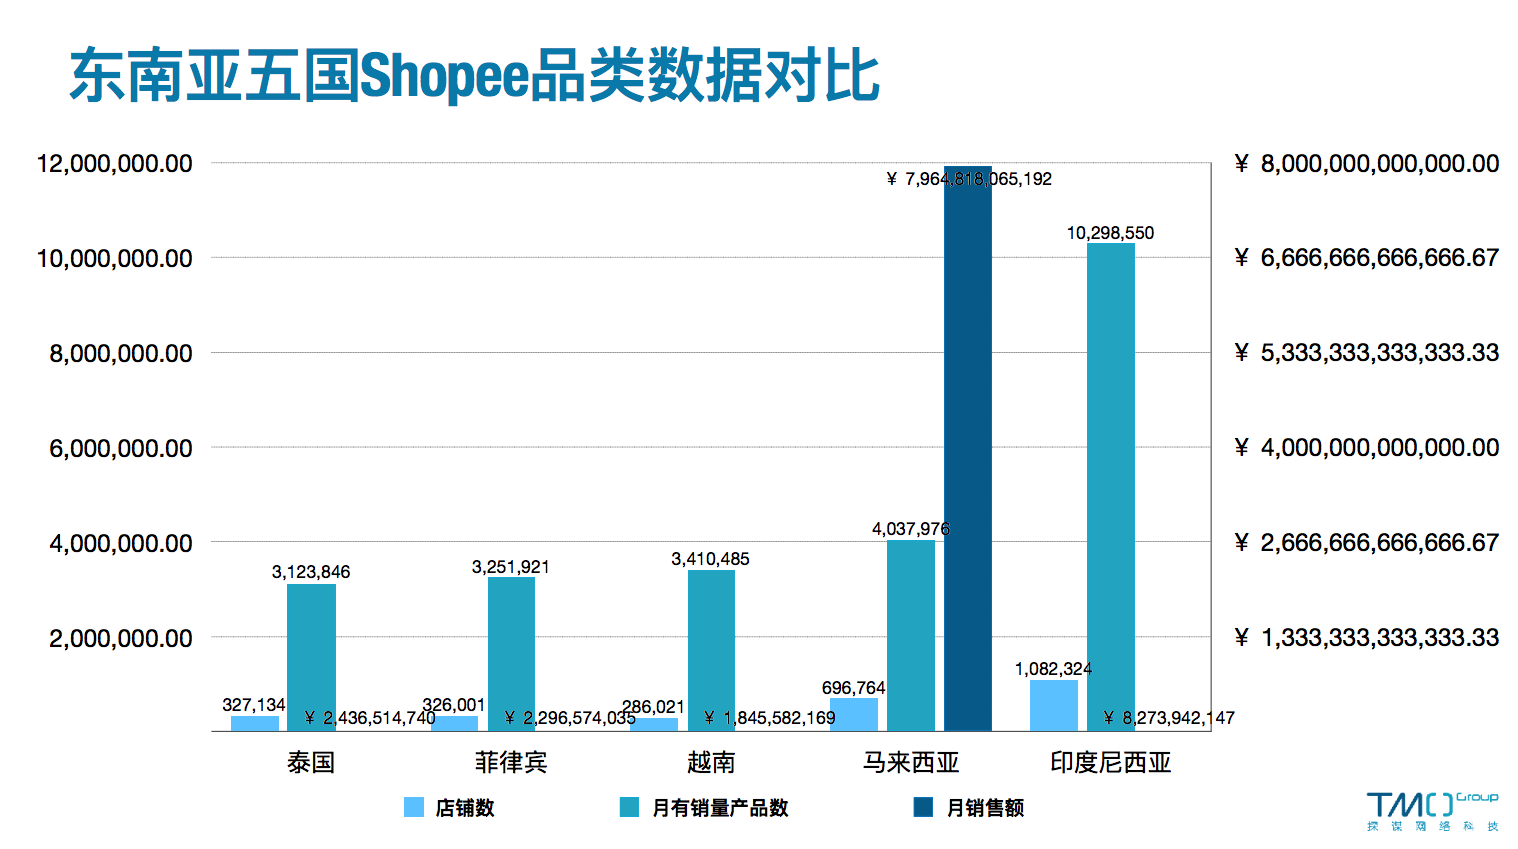 东南亚五国Shopee数据对比-3月